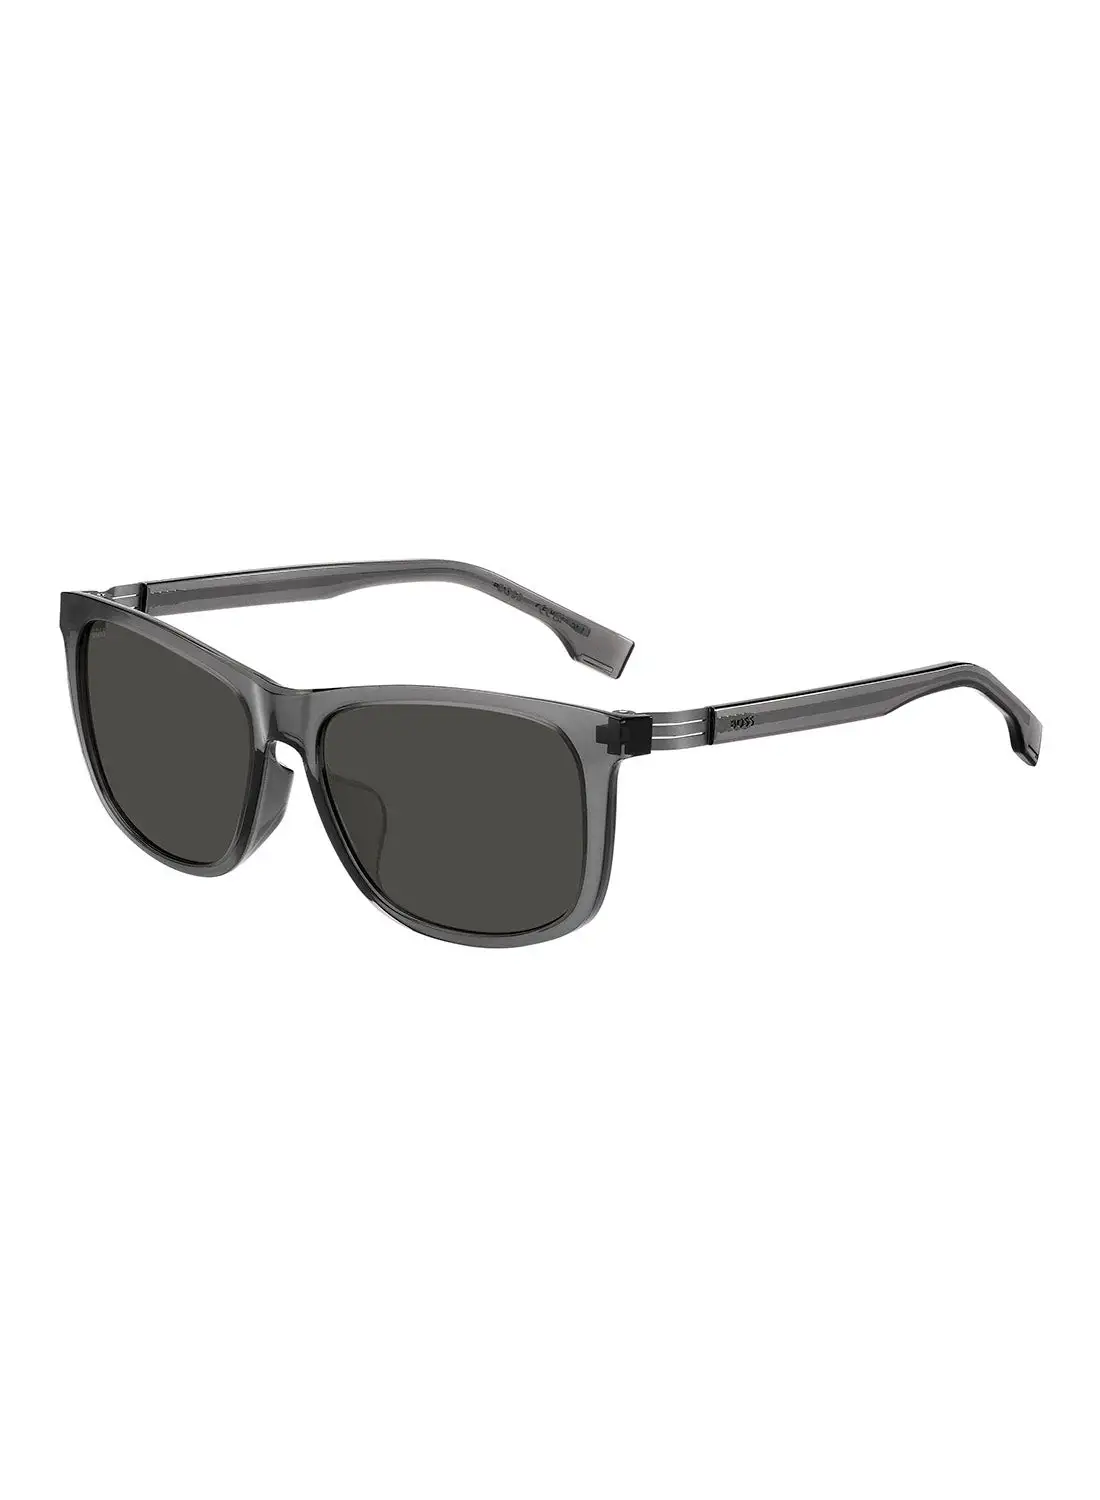 HUGO BOSS Men's UV Protection Rectangular Sunglasses - Boss 1617/F/S Grey Millimeter - Lens Size: 59 Mm